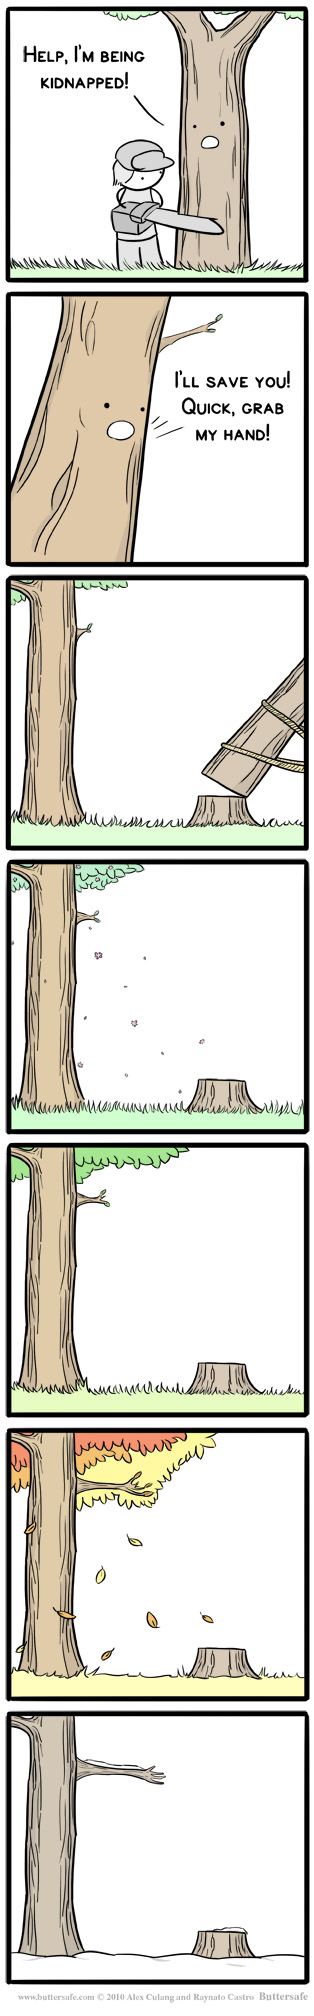 Treenapped